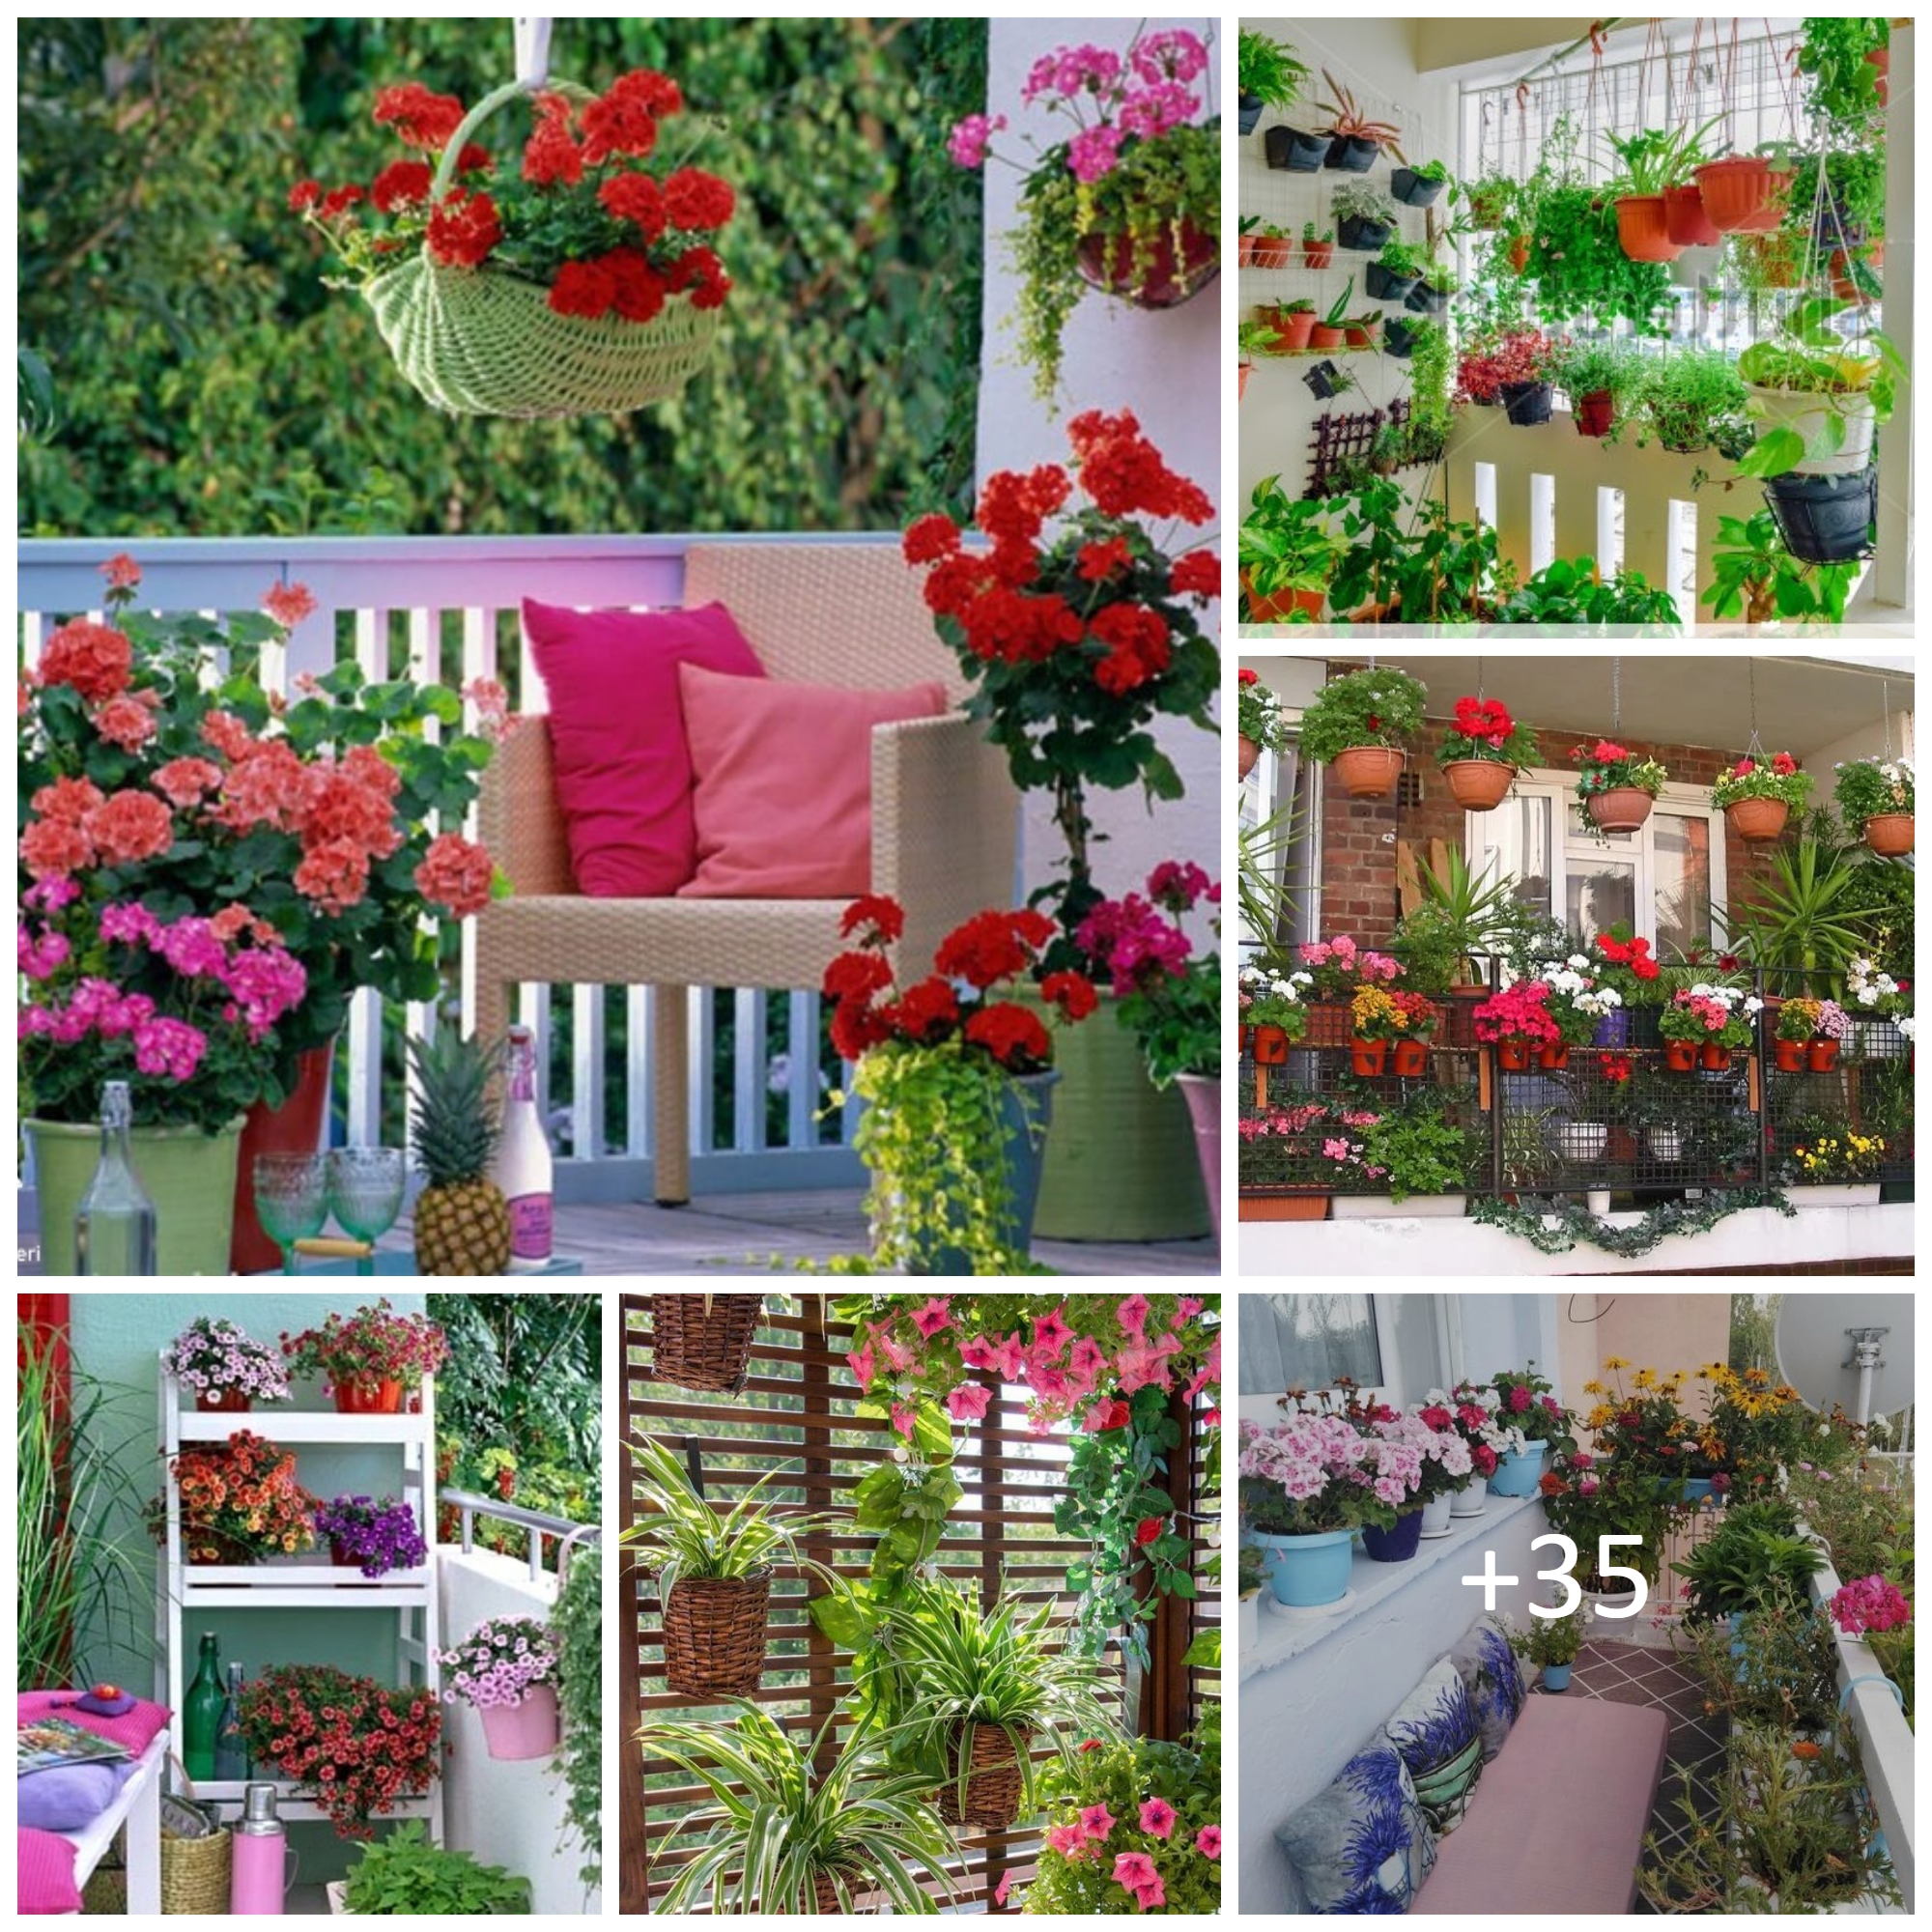 Tips to Start a Balcony Flower Garden